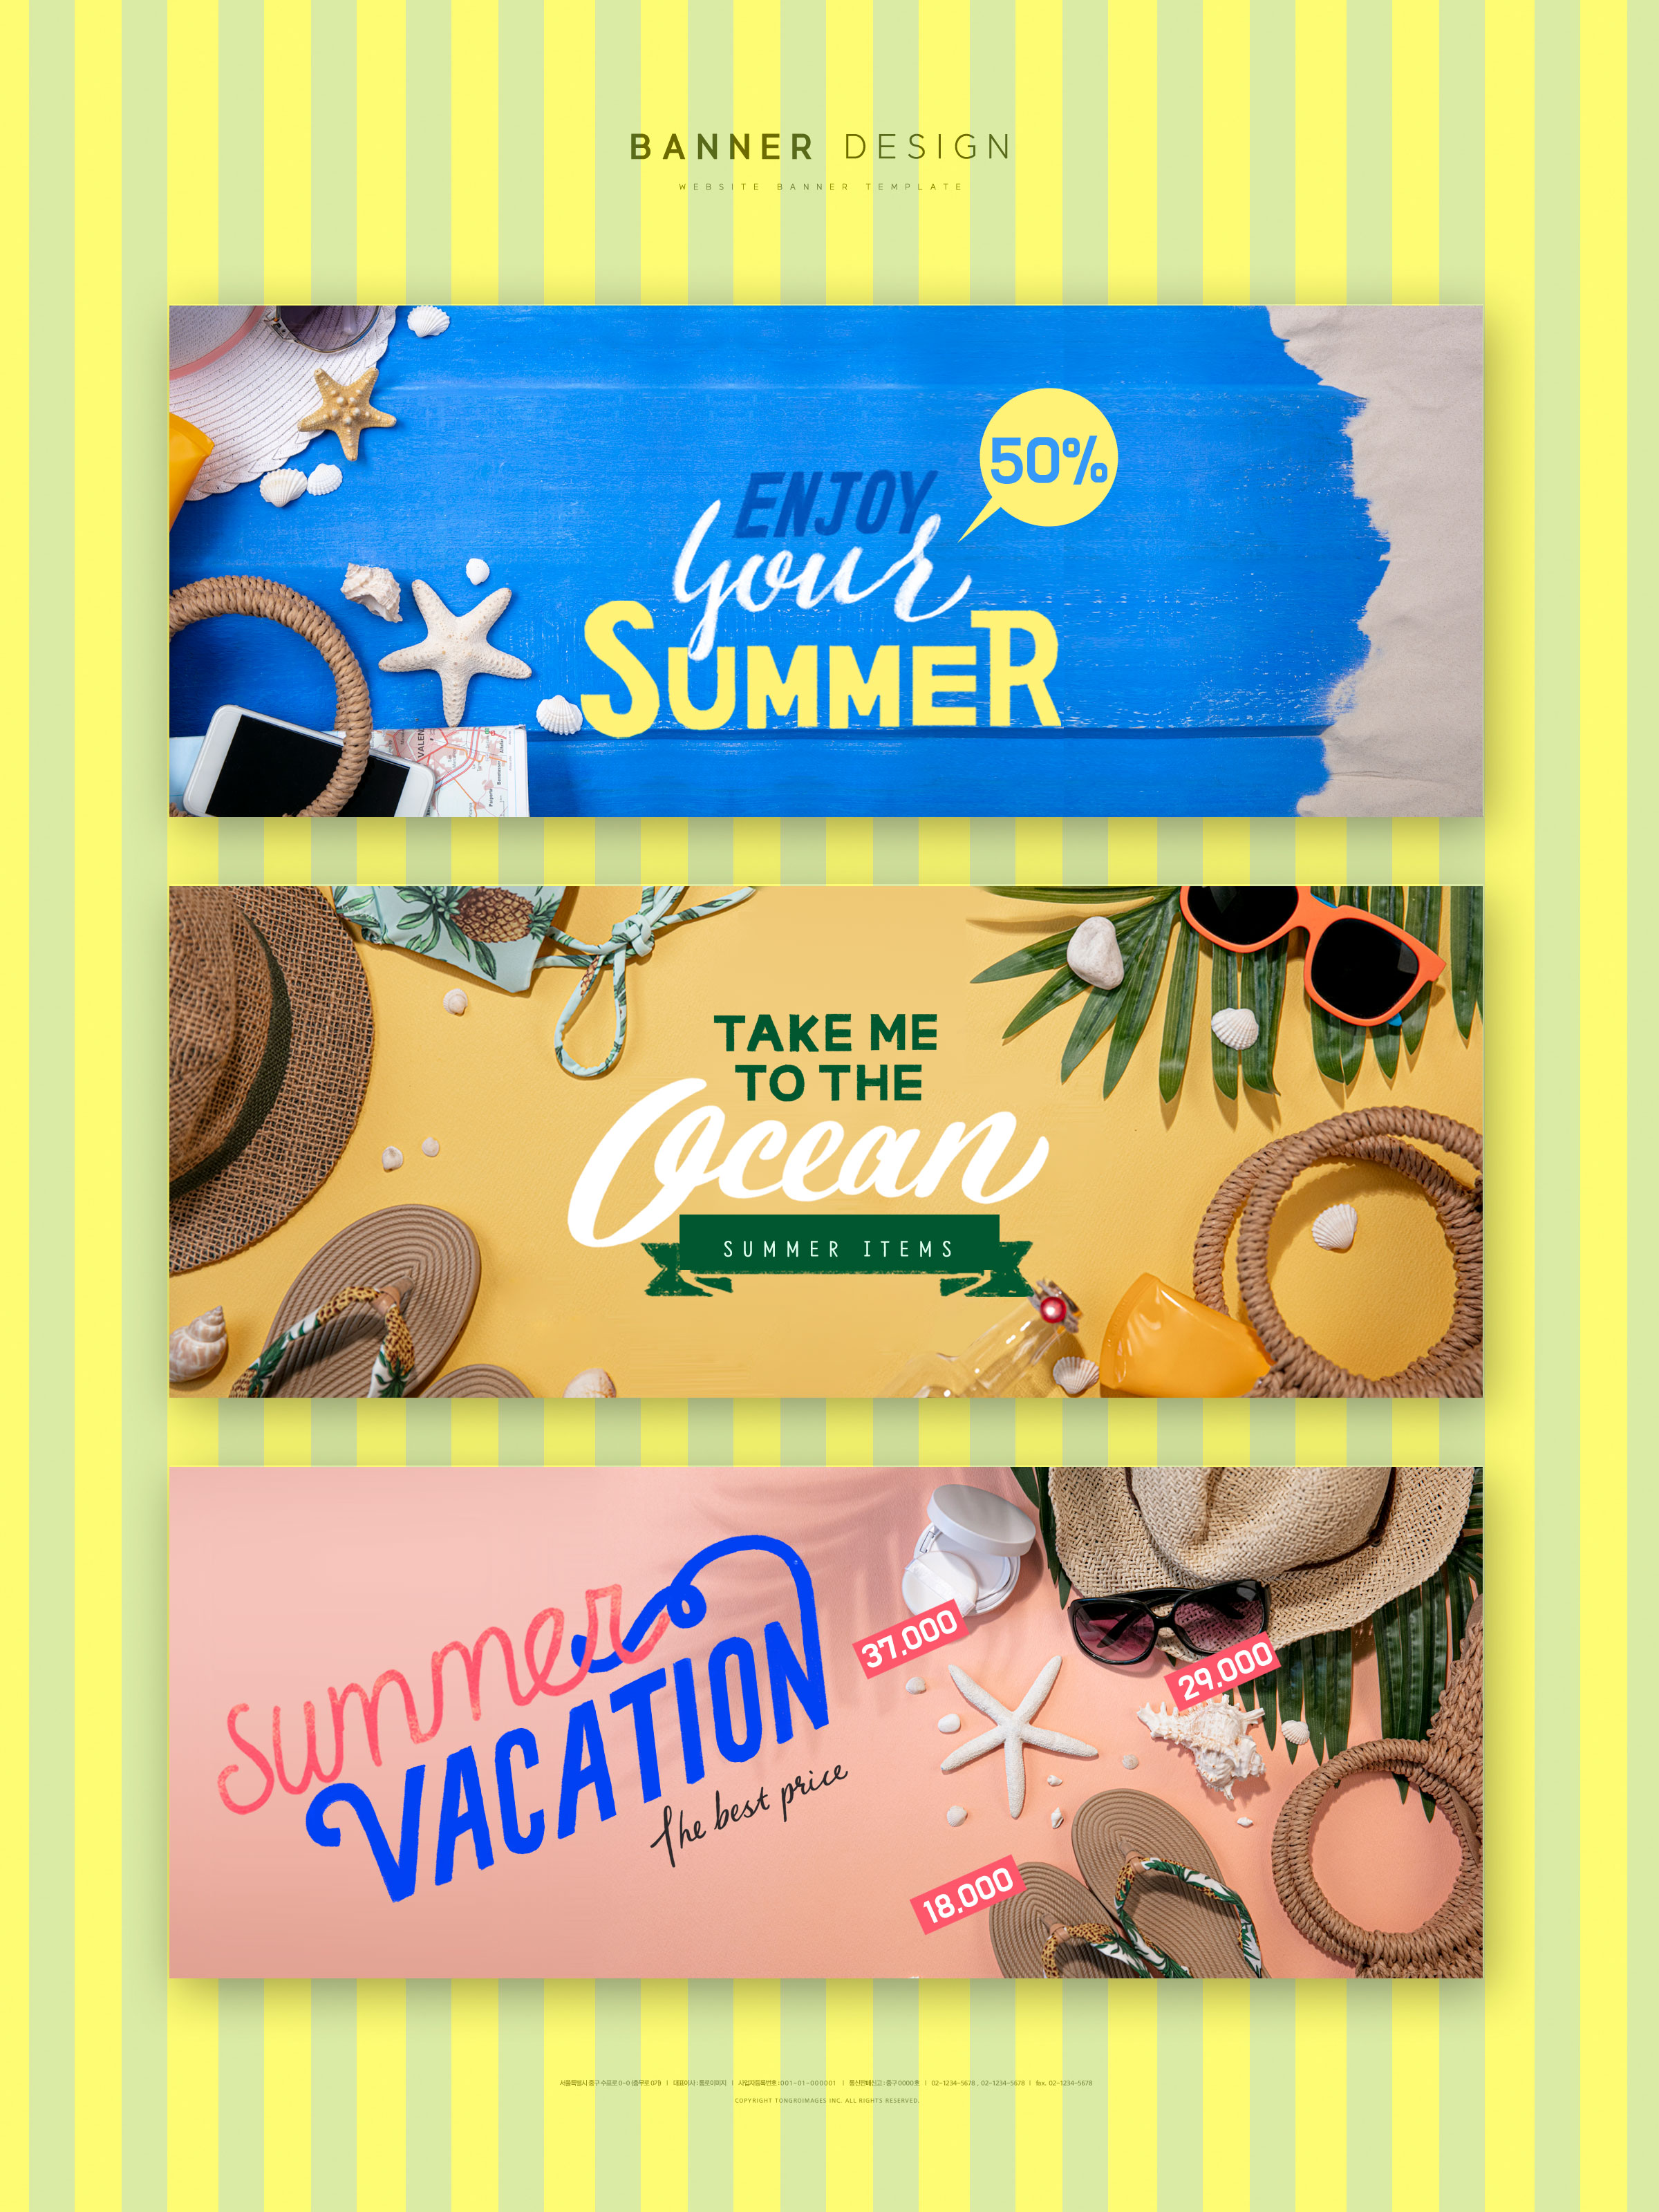 夏季暑假旅行网站促销广告Banner设计模板插图